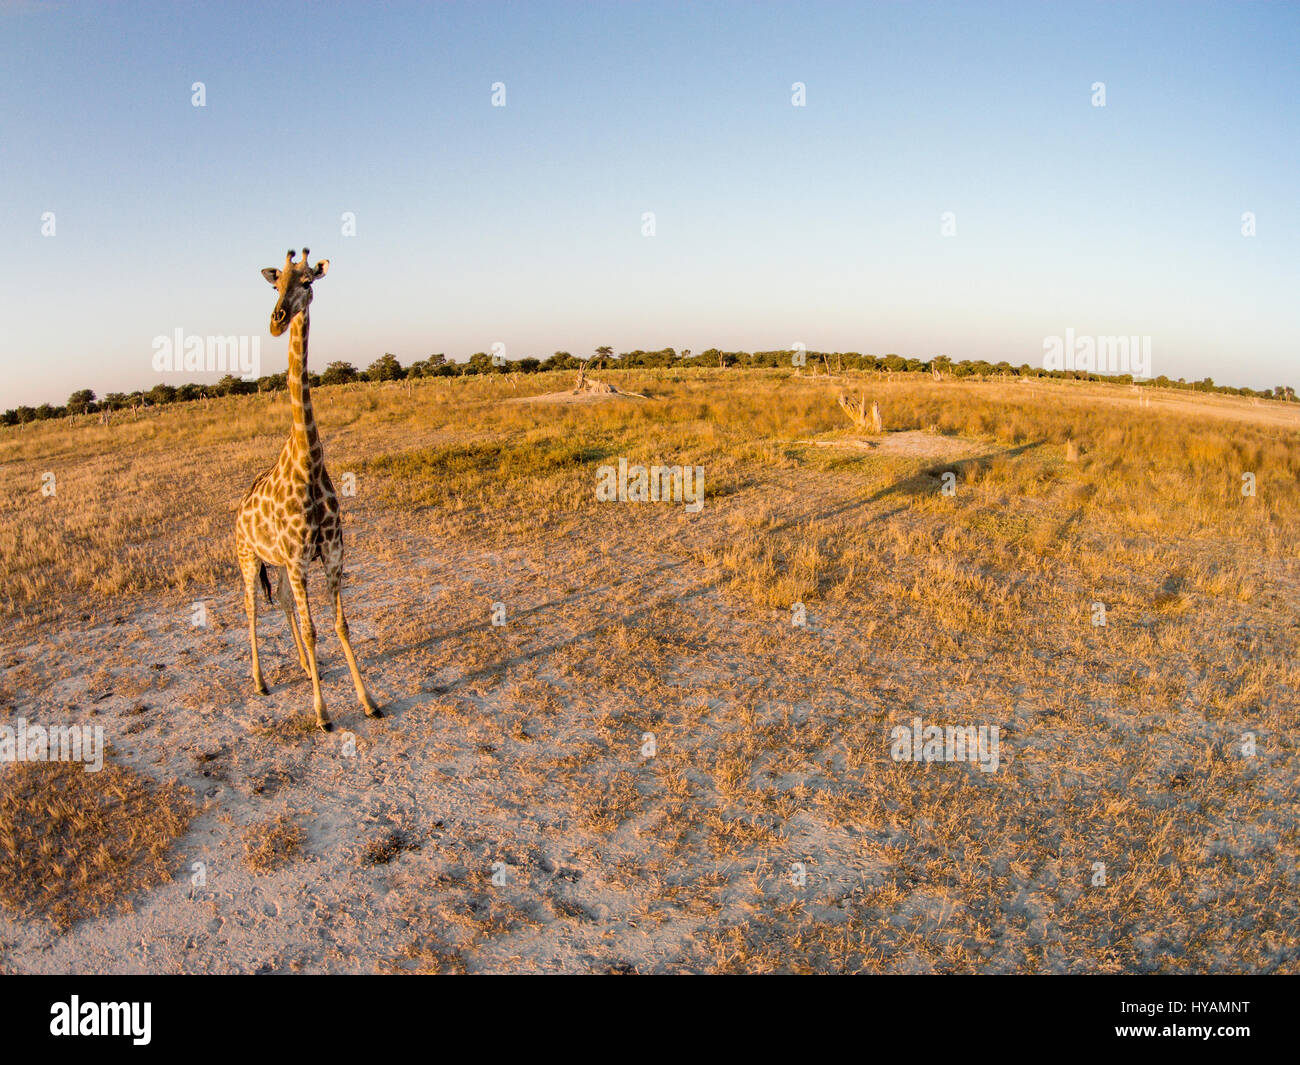 Le parc national de Chobe, BOTSWANA : un cou de girafe est à peu près aussi  longtemps que le bourdon est élevé. Un bourdon est allé sur un safari de  faune en